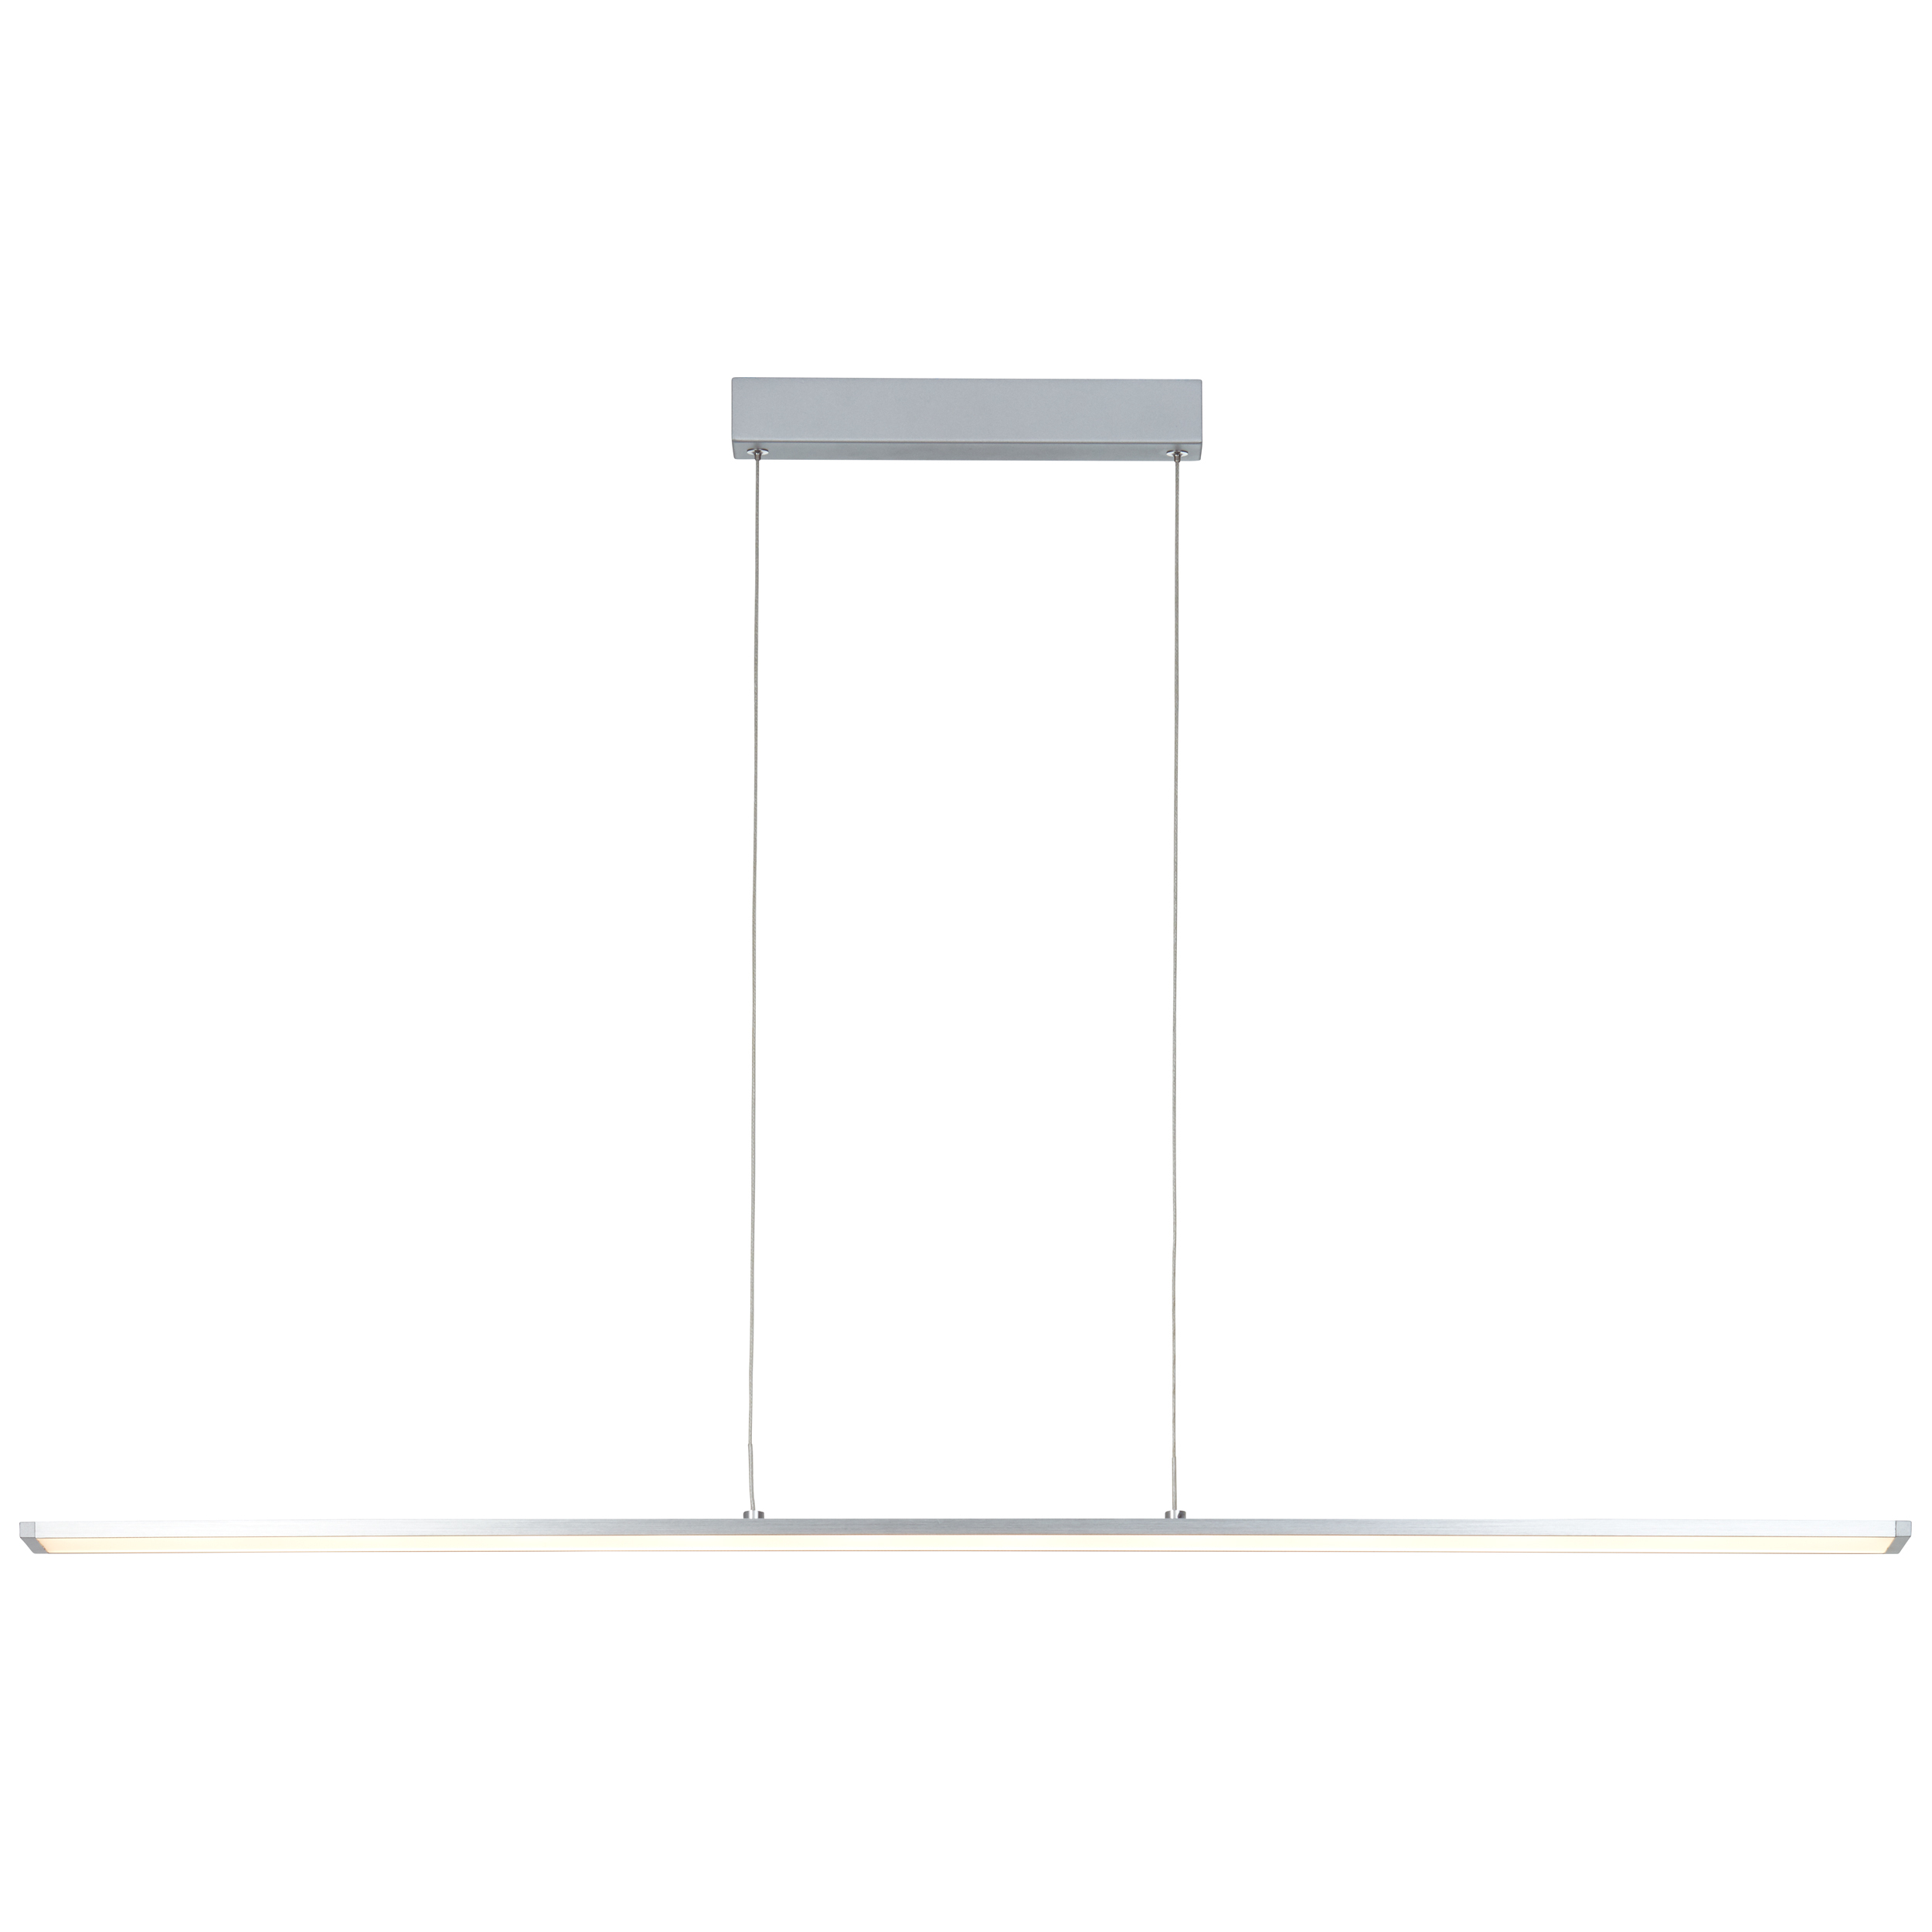 Entrance LED Pendelleuchte Paneel 120cm alu/weiß easyDim | G97028/21 | Pendelleuchten